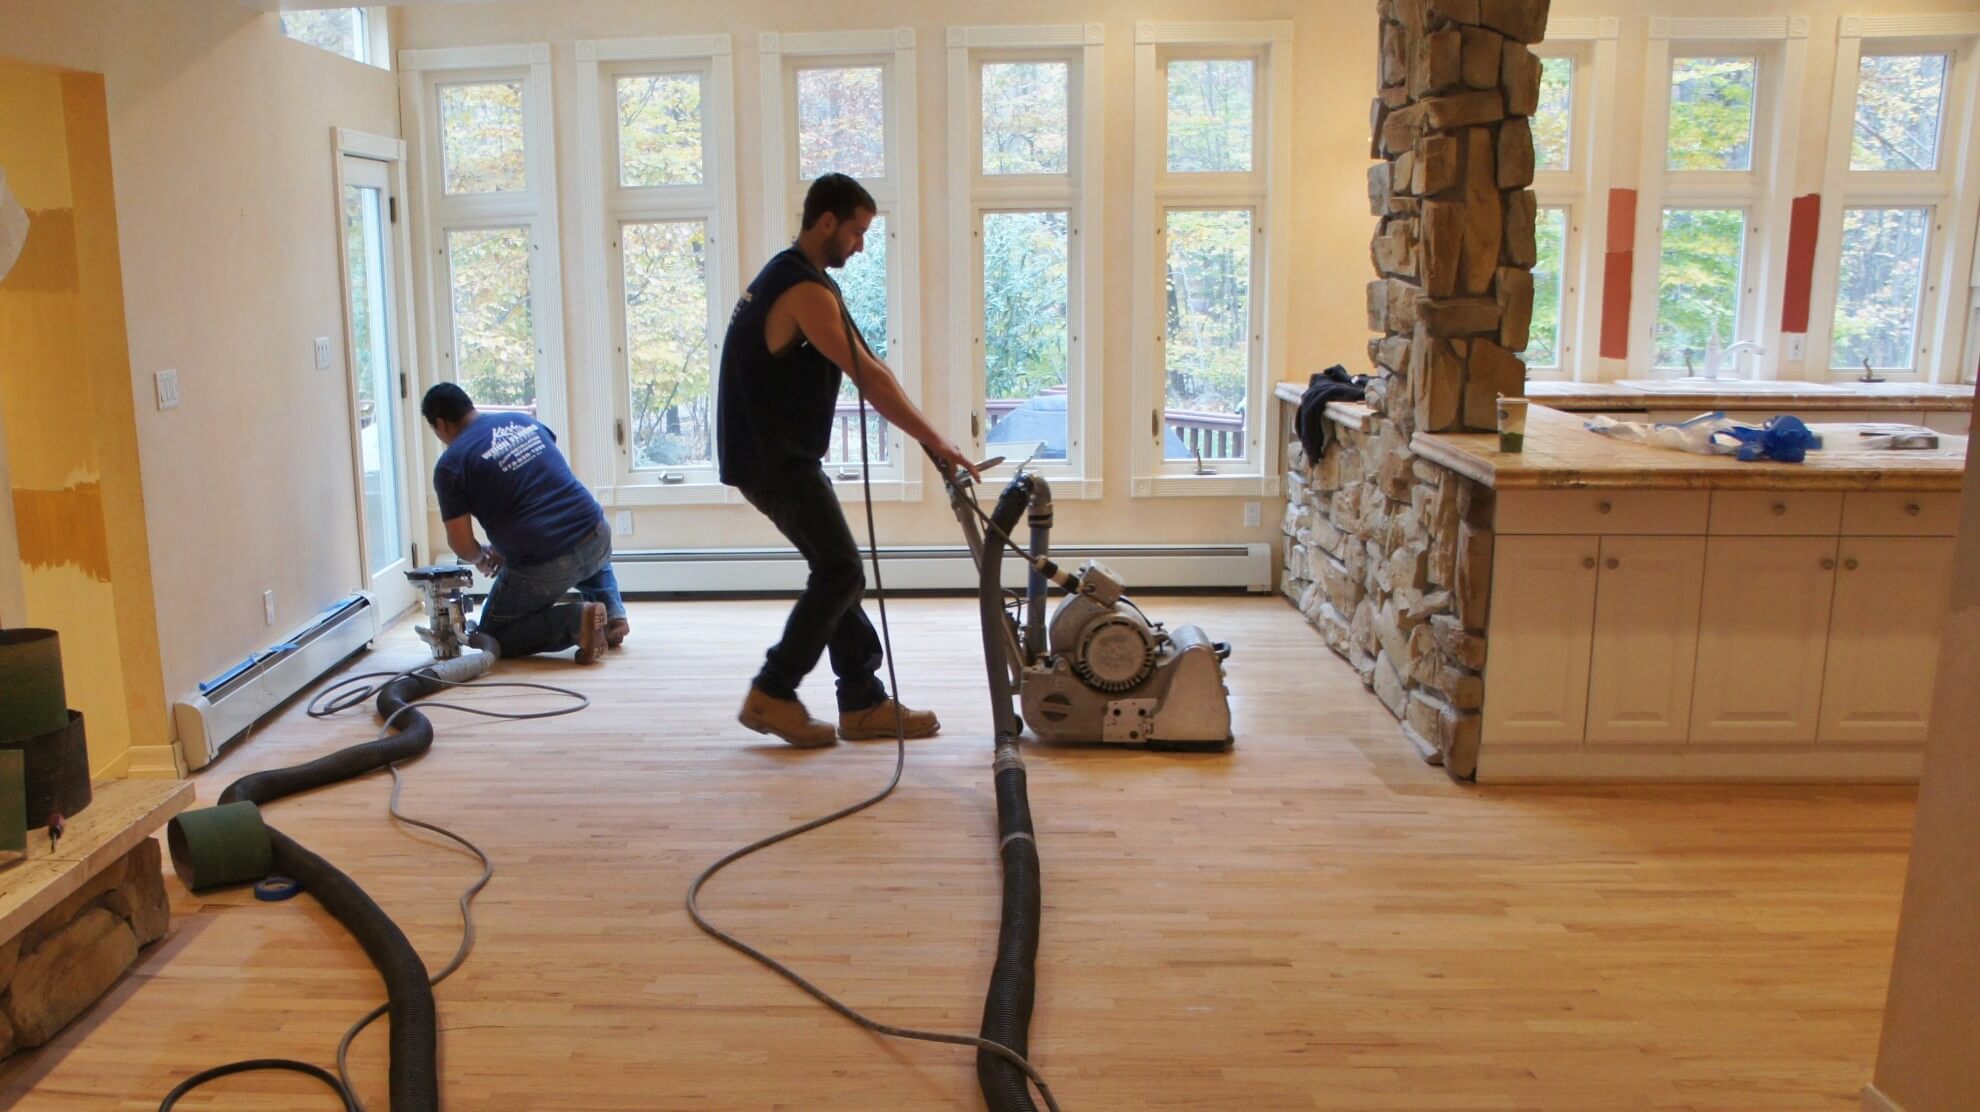 Dustless Hardwood Floor Solution In, Dustless Hardwood Floor Refinishing